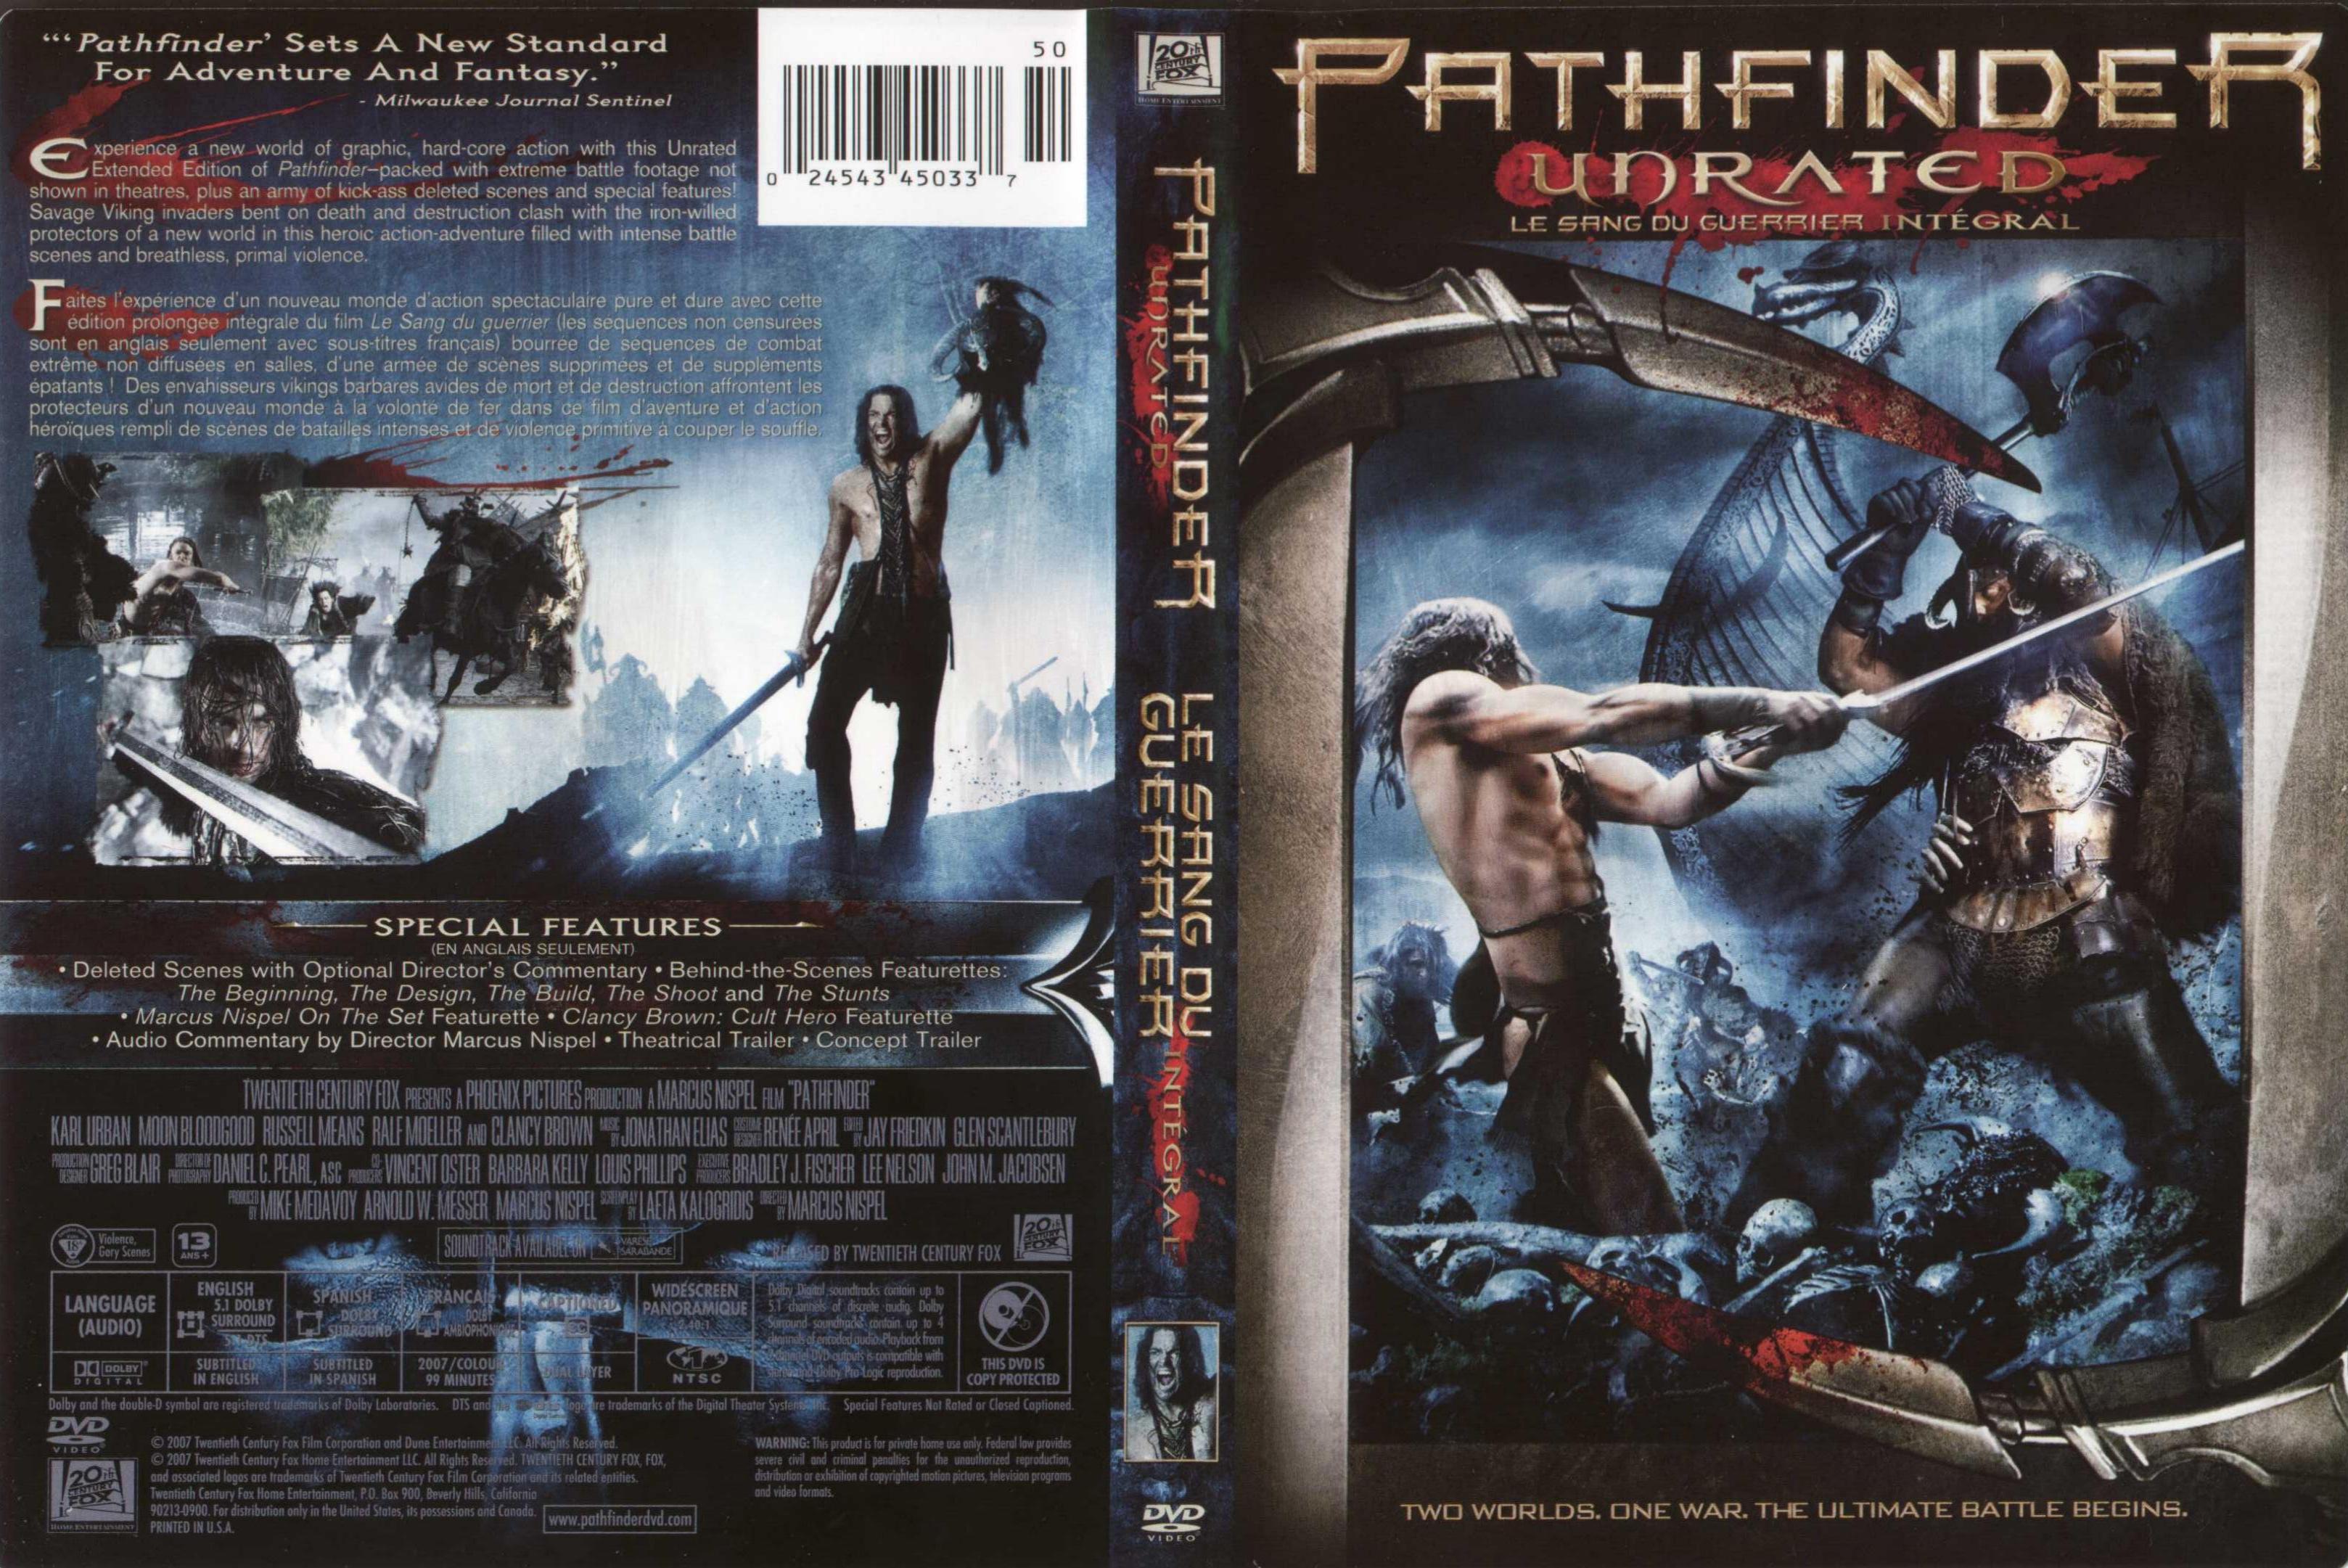 Jaquette DVD Pathfinder - Le sang du guerrier (Canadienne)